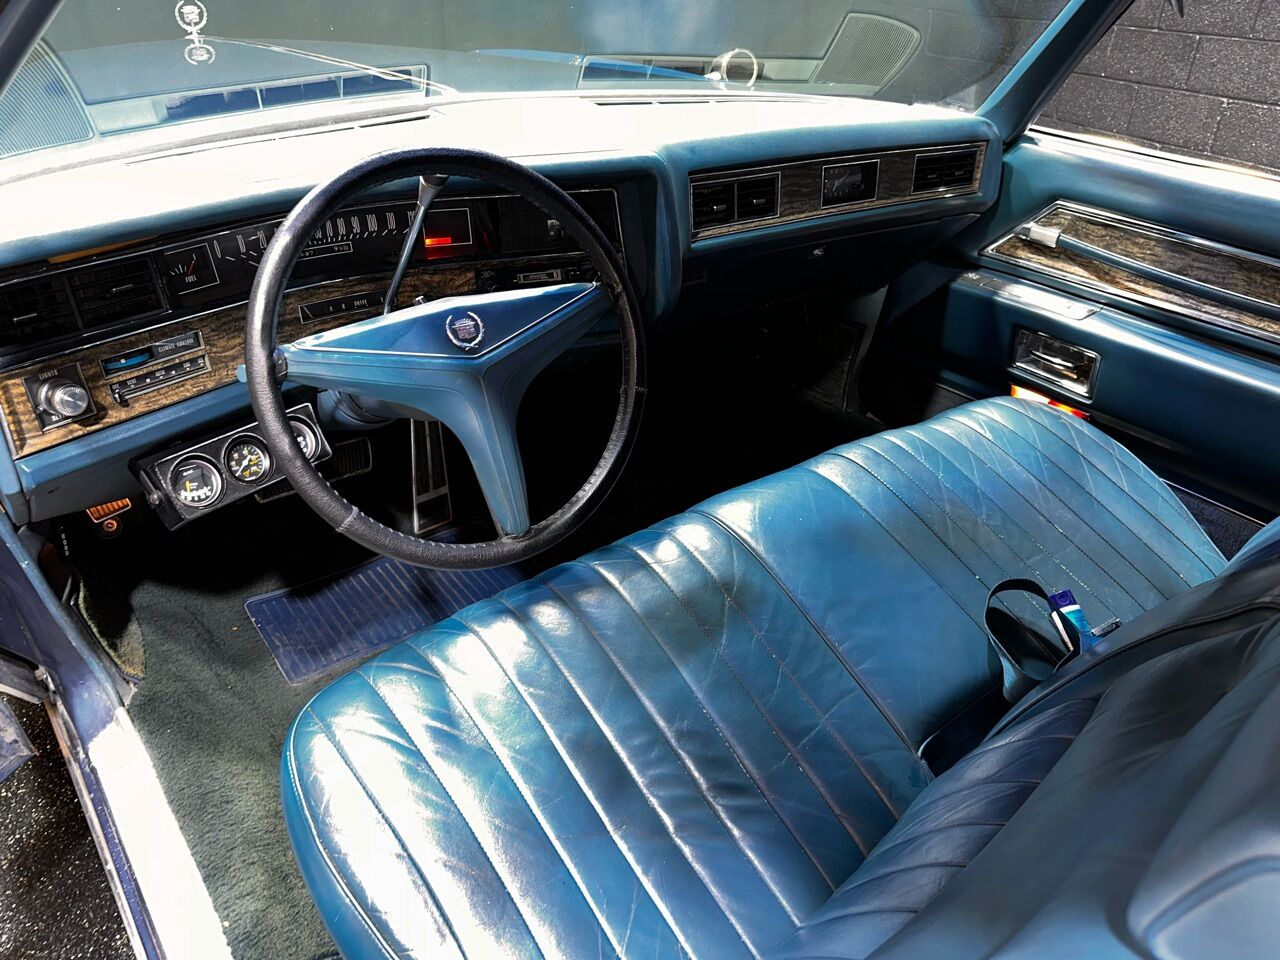 1971 Cadillac Eldorado 2